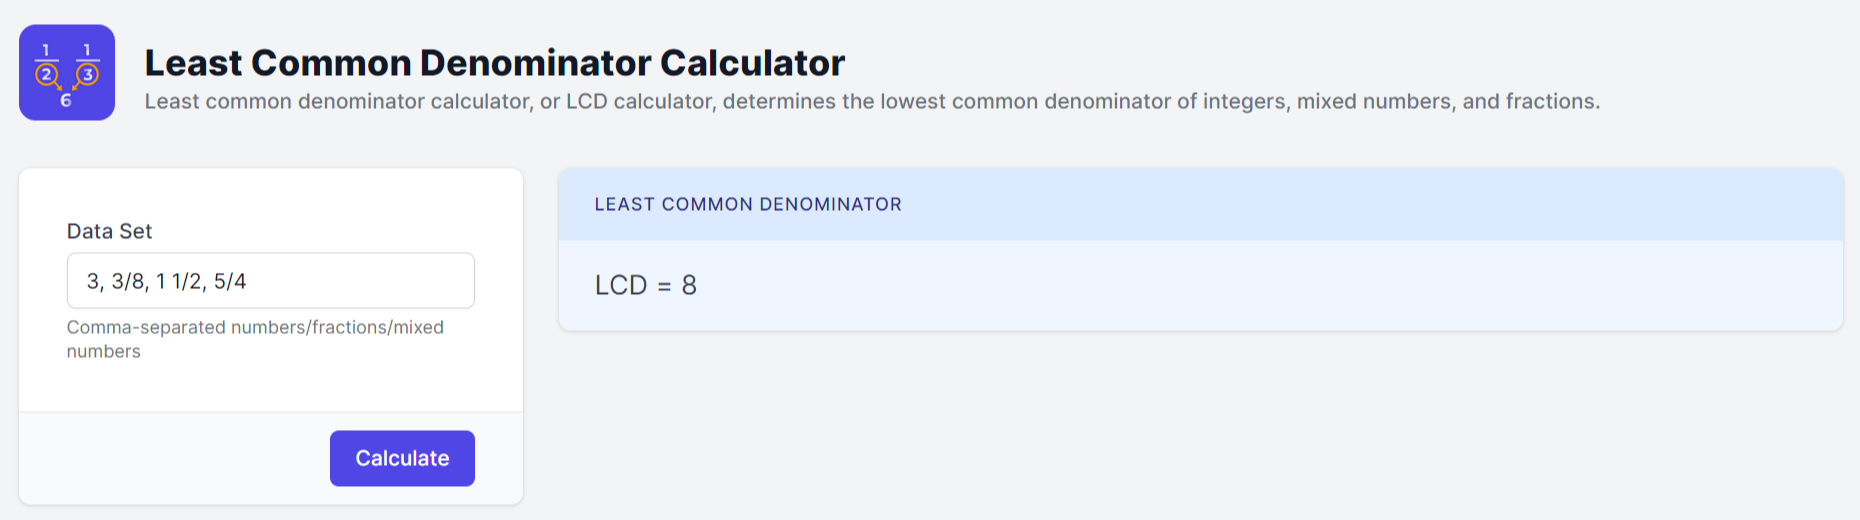 LCD Calculator - Least Common Denominator